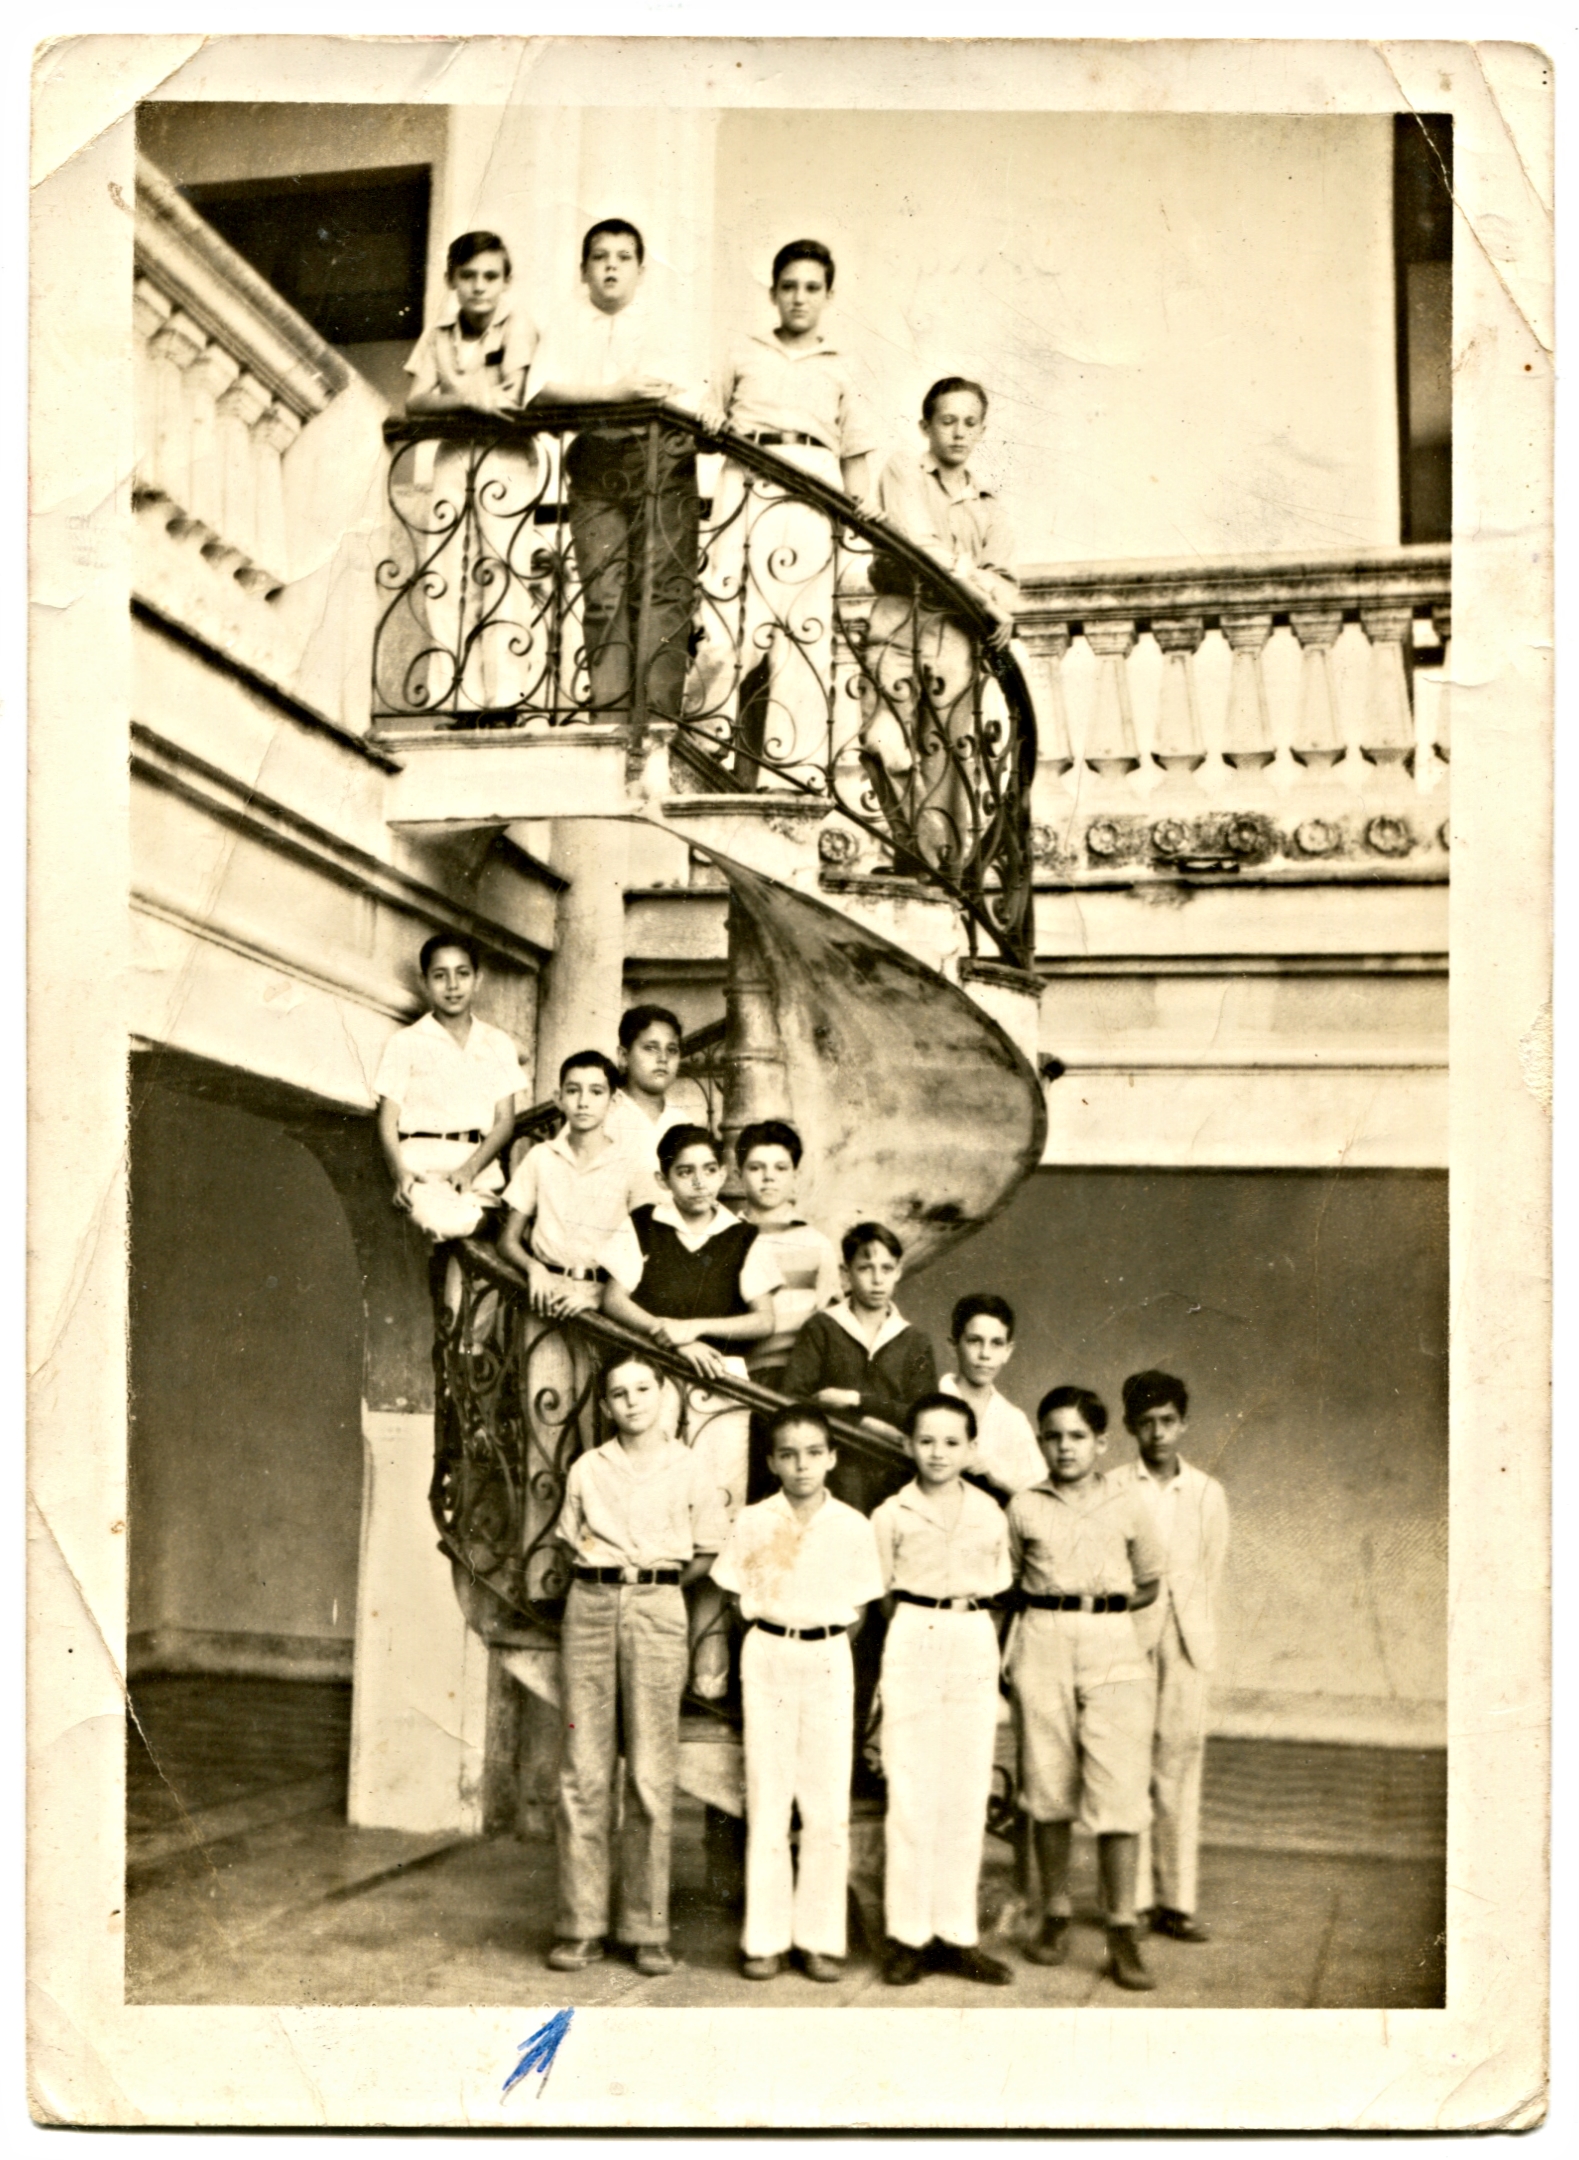 Santiago de Cuba, December 1, 1938